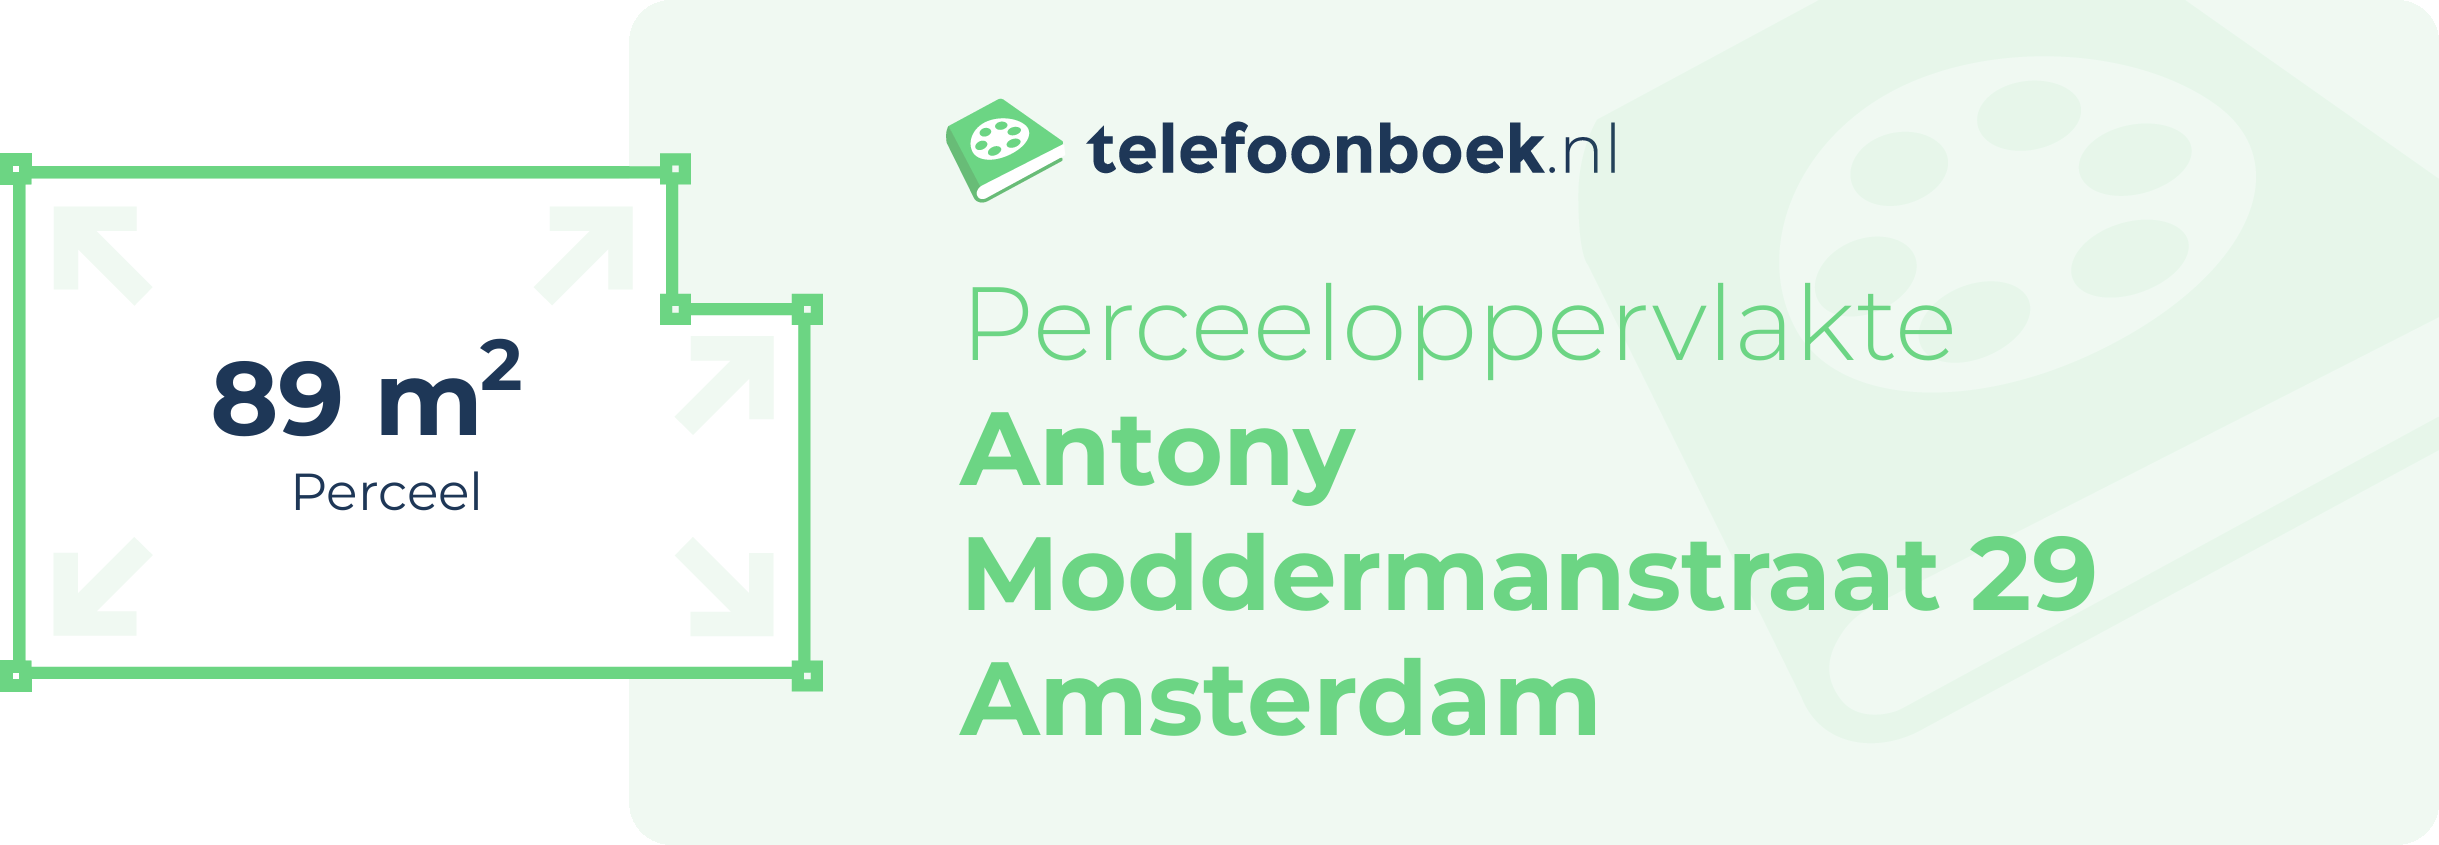 Perceeloppervlakte Antony Moddermanstraat 29 Amsterdam